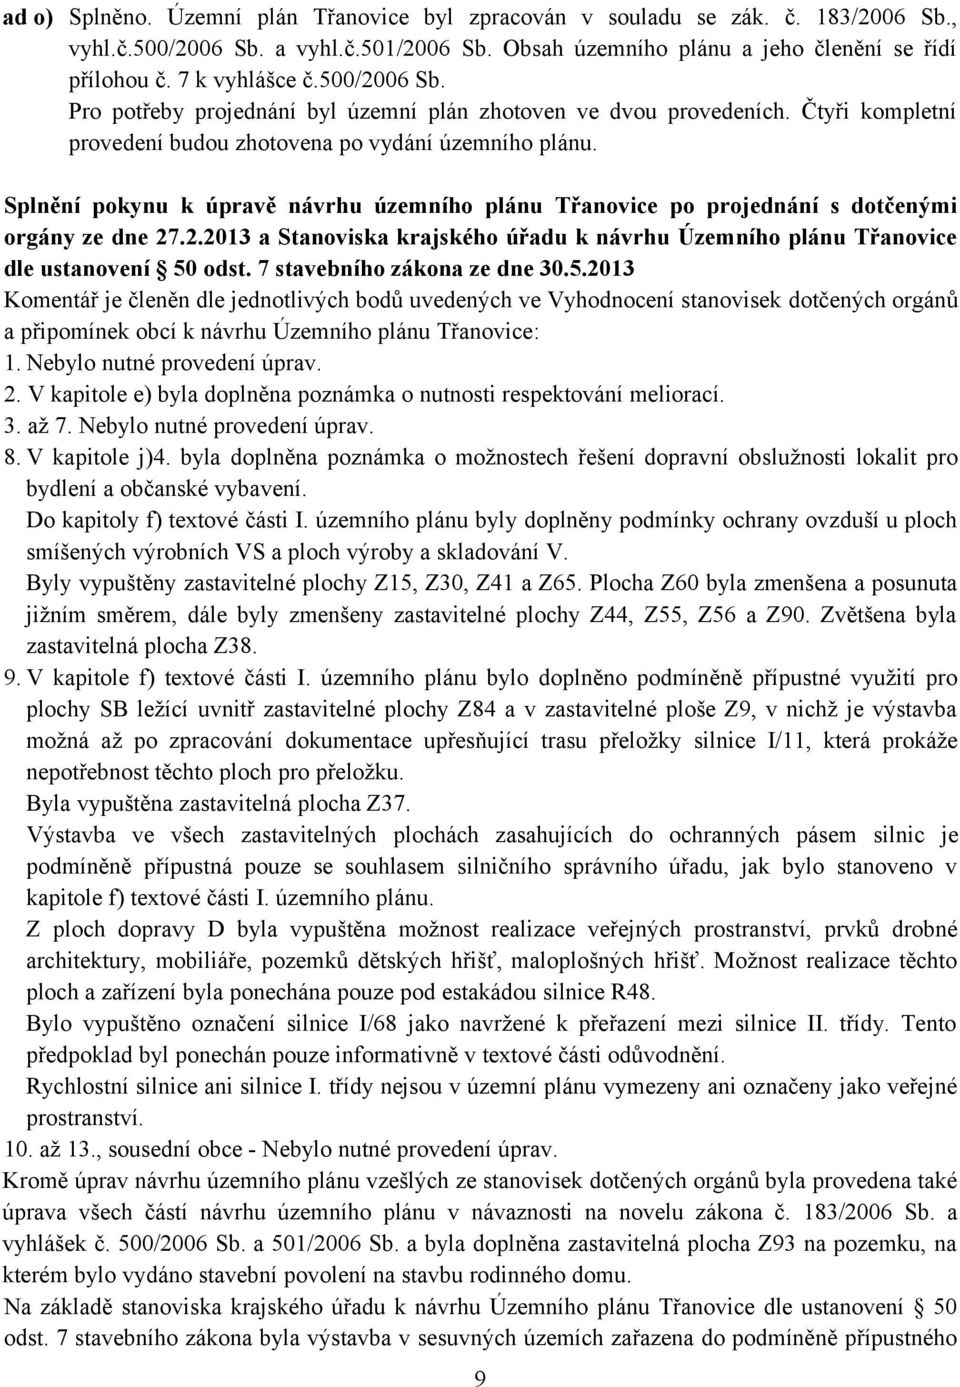 Splnění pokynu k úpravě návrhu územního plánu Třanovice po projednání s dotčenými orgány ze dne 27.2.2013 a Stanoviska krajského úřadu k návrhu Územního plánu Třanovice dle ustanovení 50 odst.